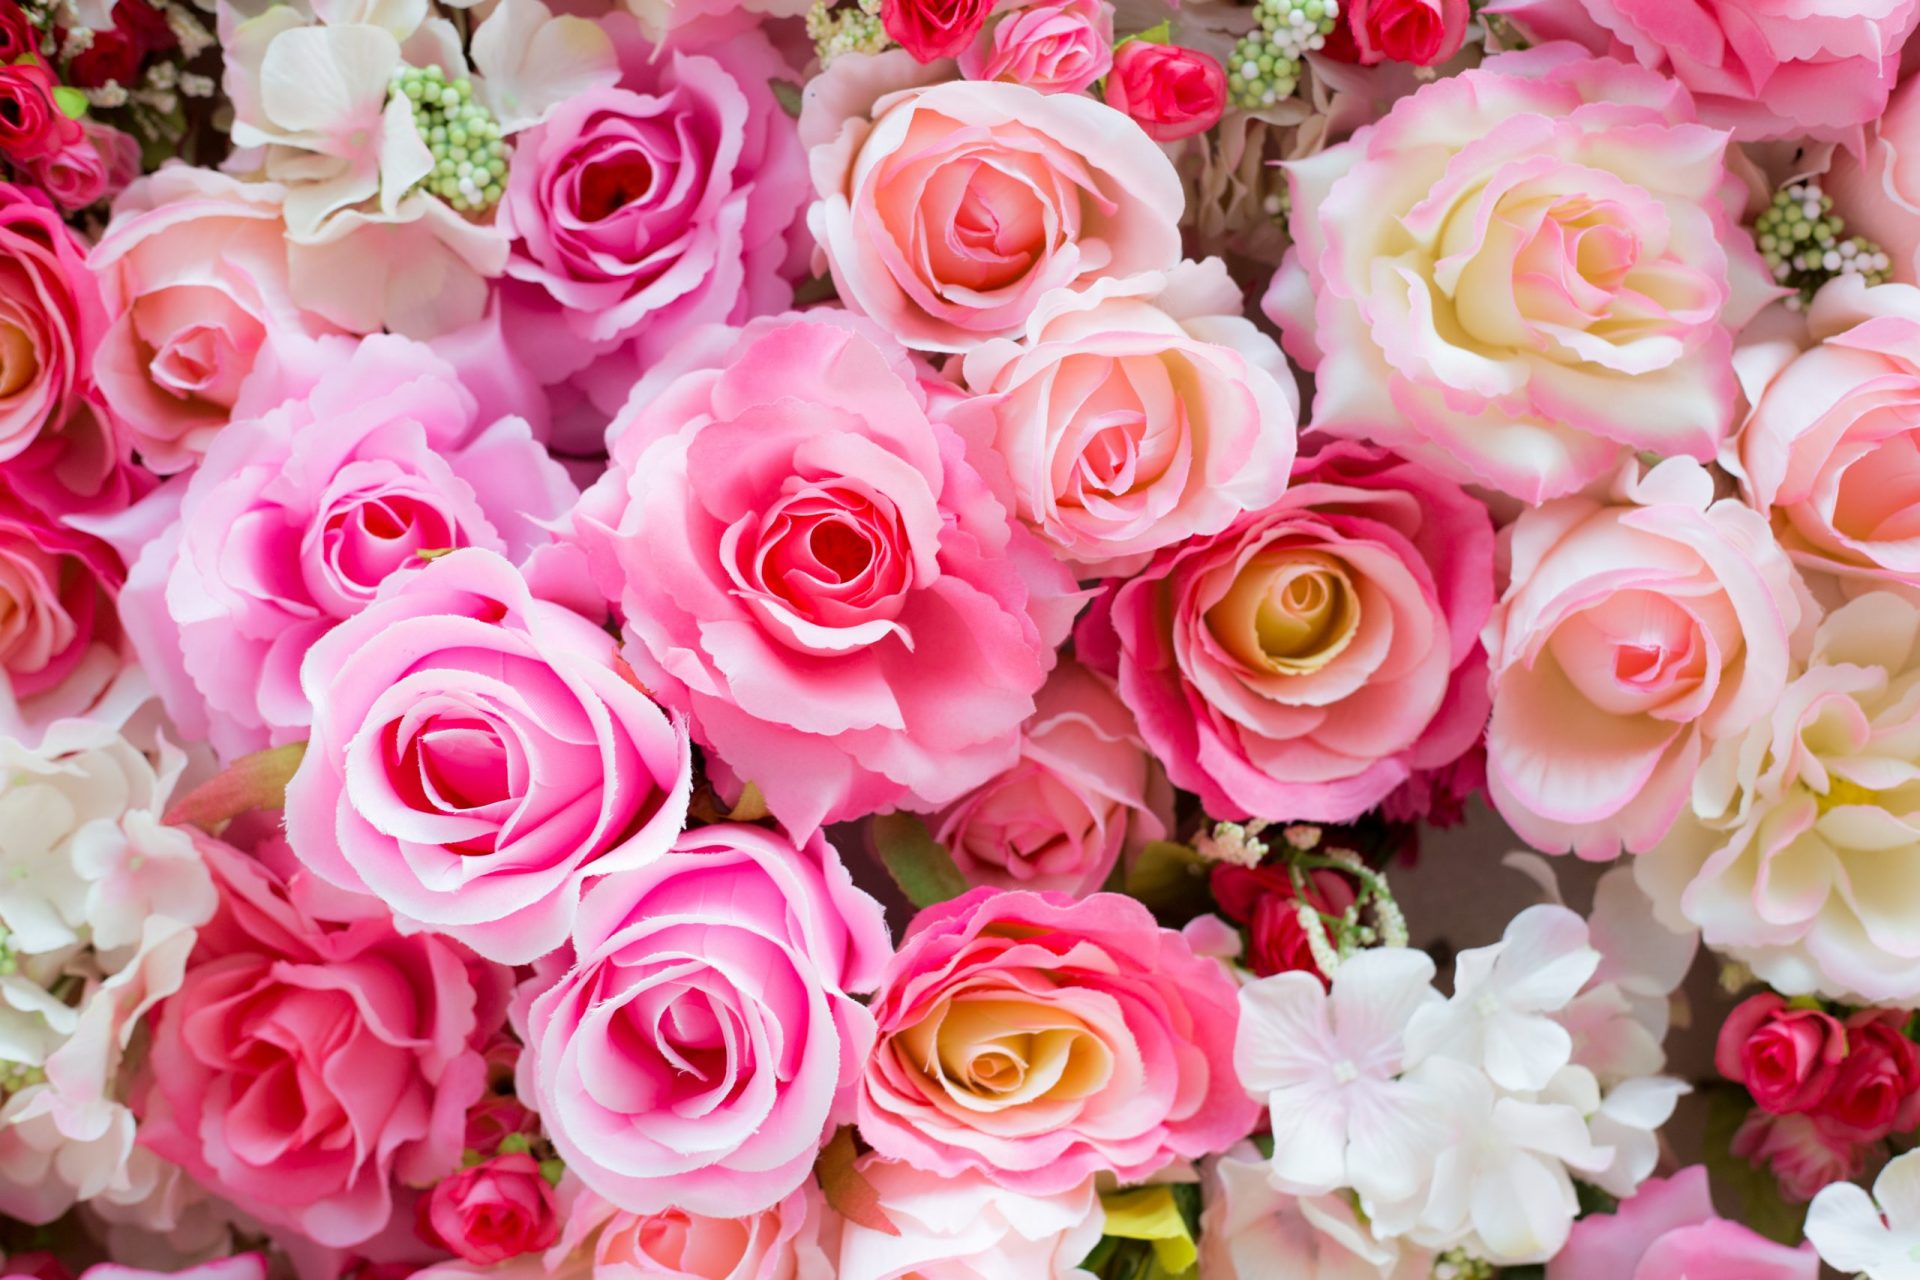 Hoa hồng màu sắc là bức tranh thơ mộng của thiên nhiên, đưa bạn đến với thế giới màu sắc rực rỡ và tươi mới. Cùng với sự pha trộn của các màu sắc khác nhau, hoa hồng khiến bạn say đắm và thư giãn. Chúng tôi sẽ giới thiệu cho bạn những hình ảnh đẹp nhất về hoa hồng màu sắc.